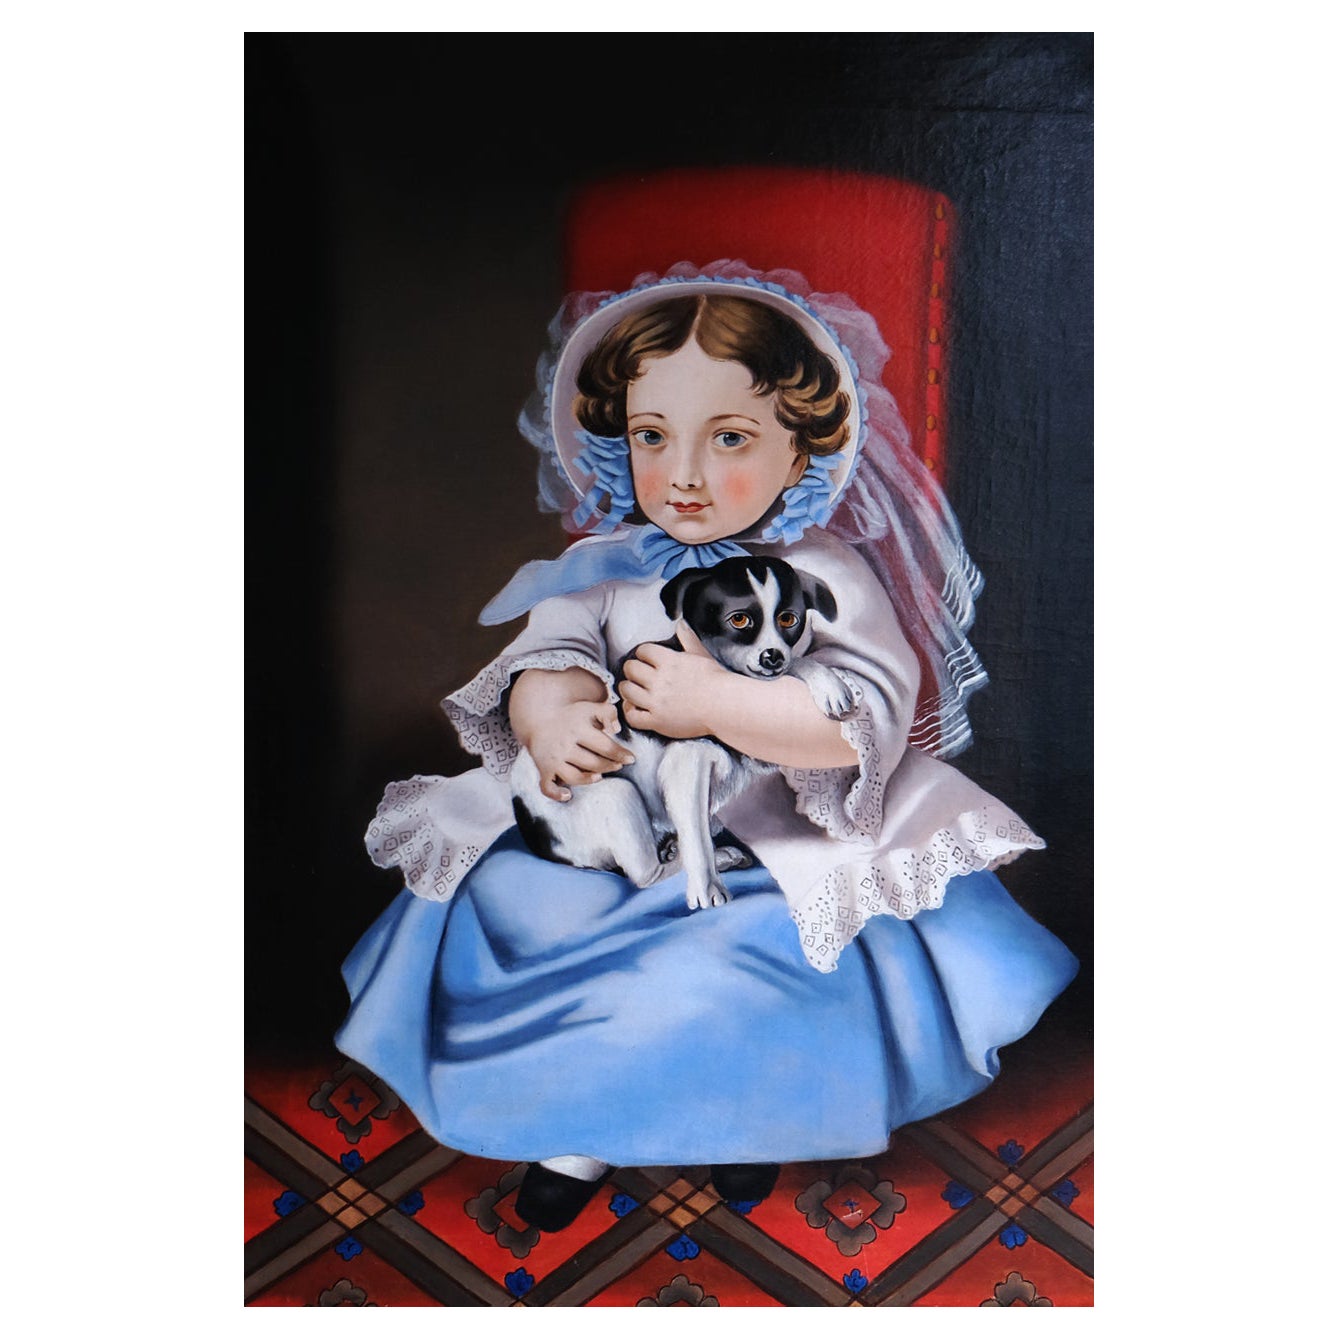 Portrait d'une fille, école provinciale, 20e siècle, huile sur toile